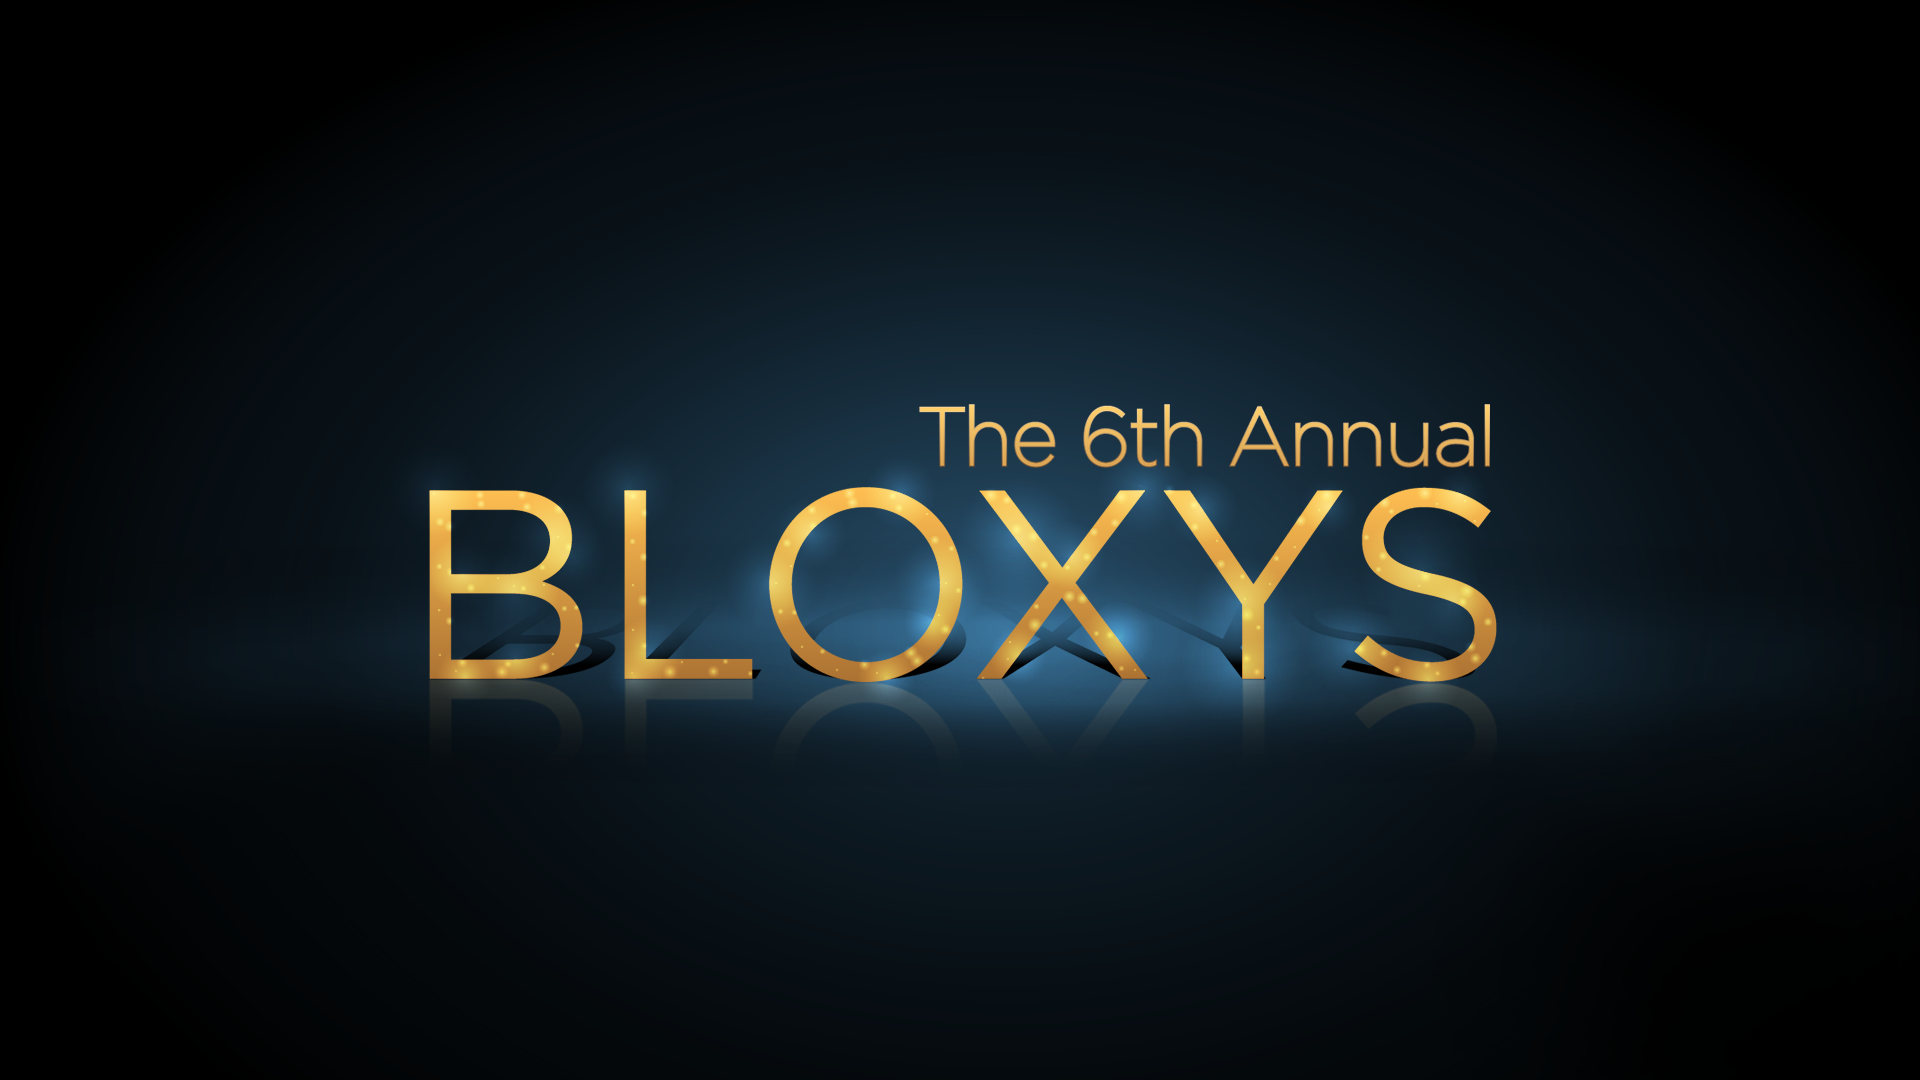 Bloxys 2020